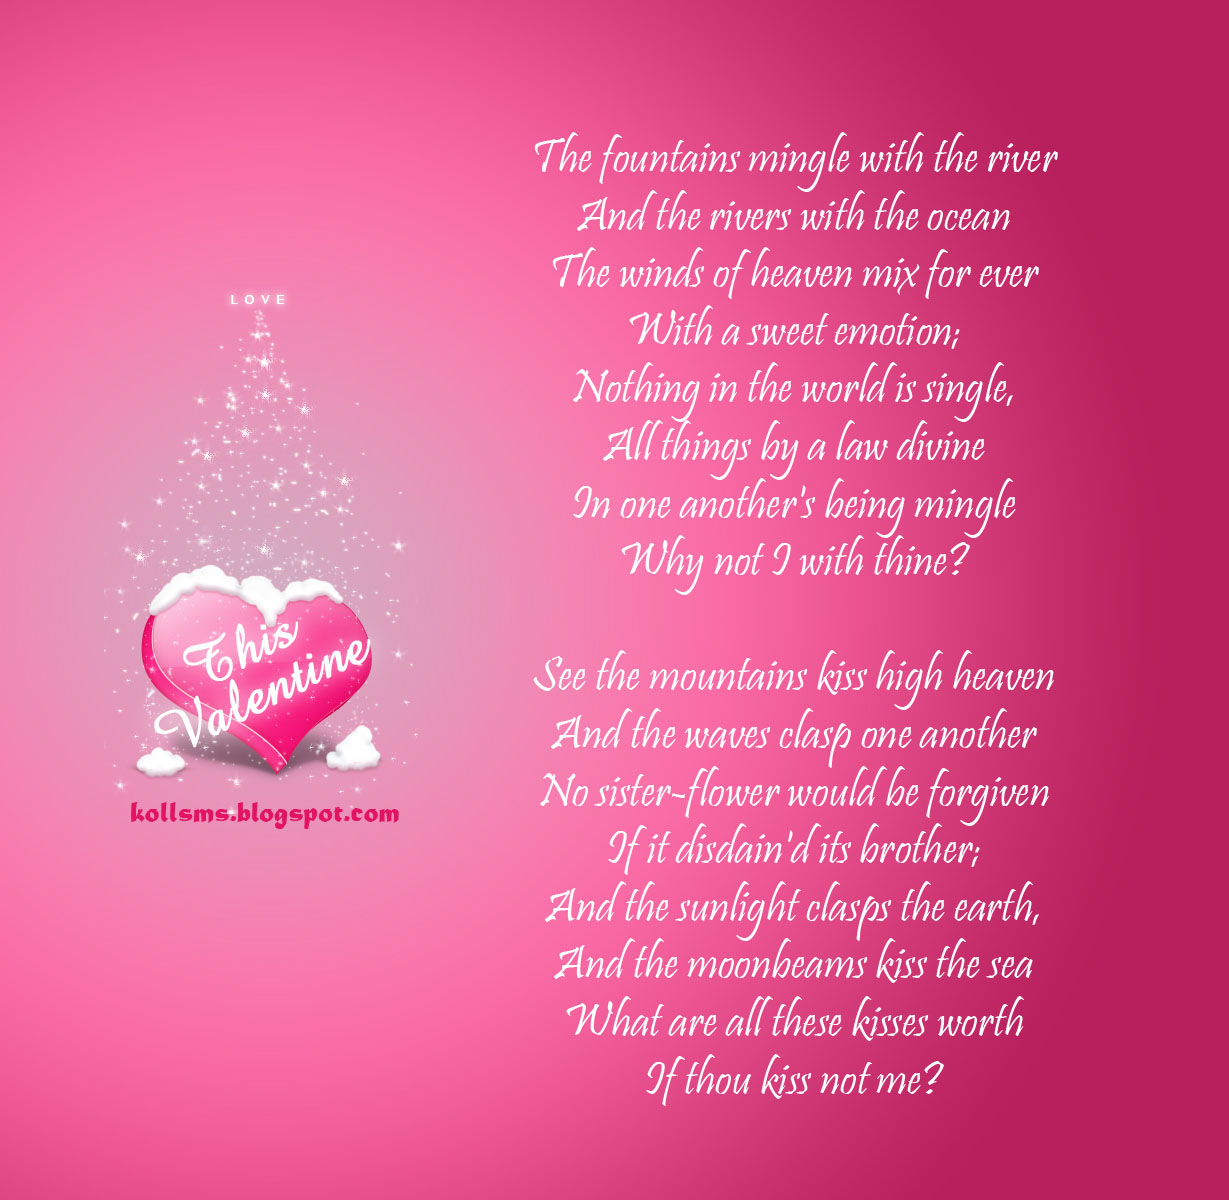 fond d'écran ghazal,texte,rose,cœur,amour,la saint valentin